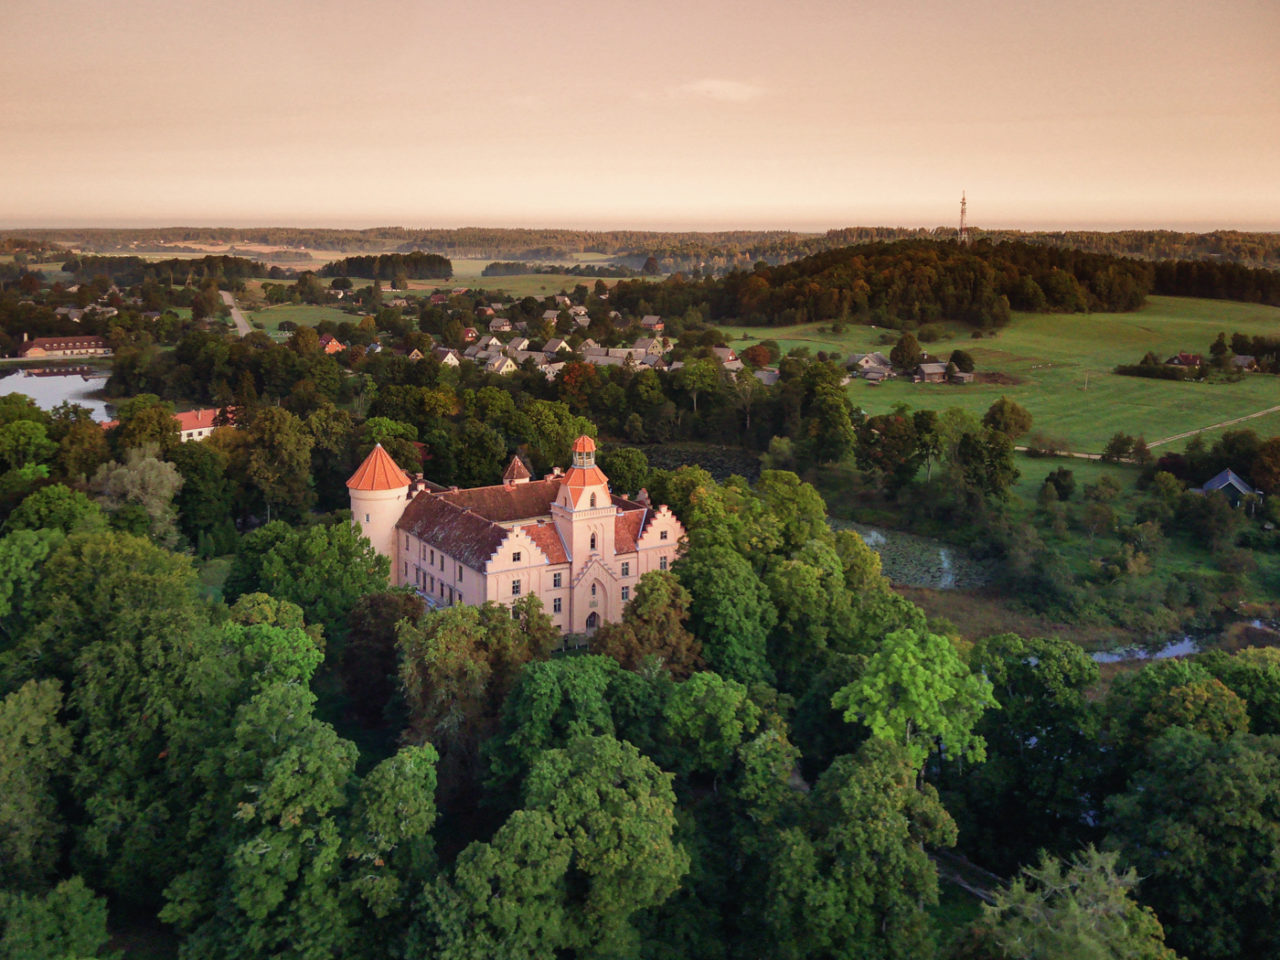 Latvia: Ēdole castle.